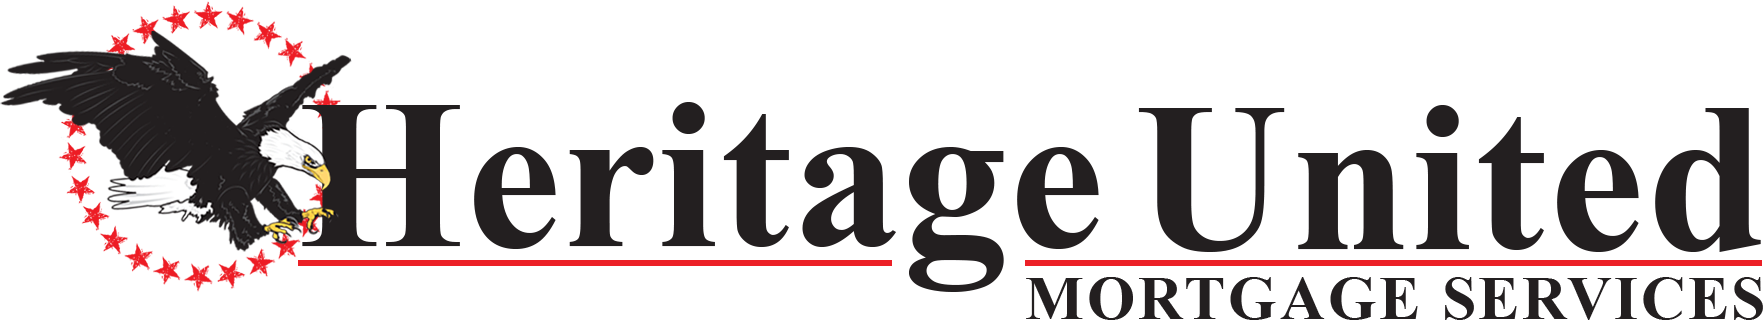 black-heritage-united-mortgage-logo-horizontal (2)